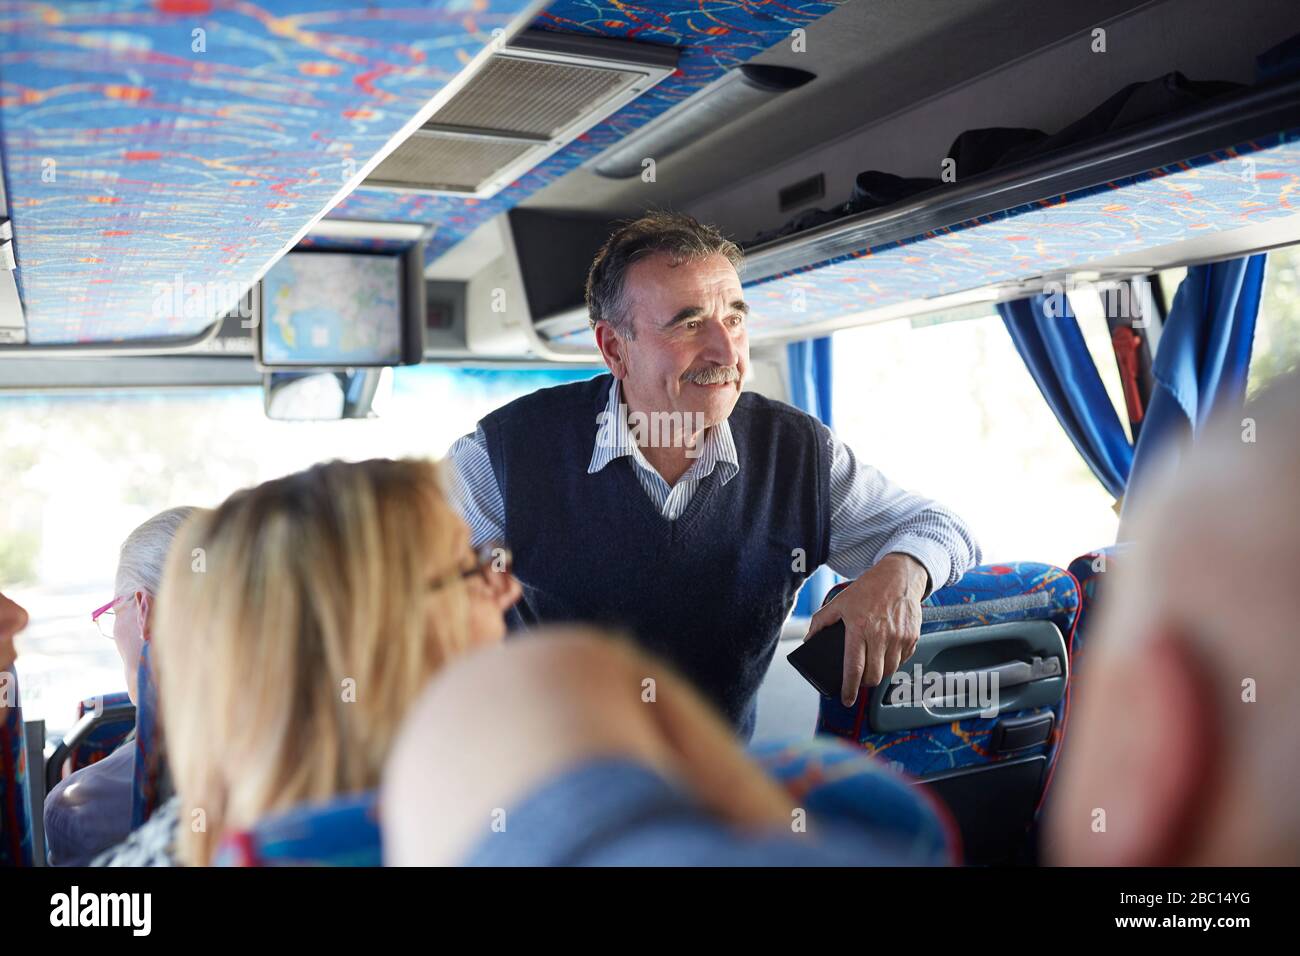 Smiling active senior man tourist on tour bus Stock Photo